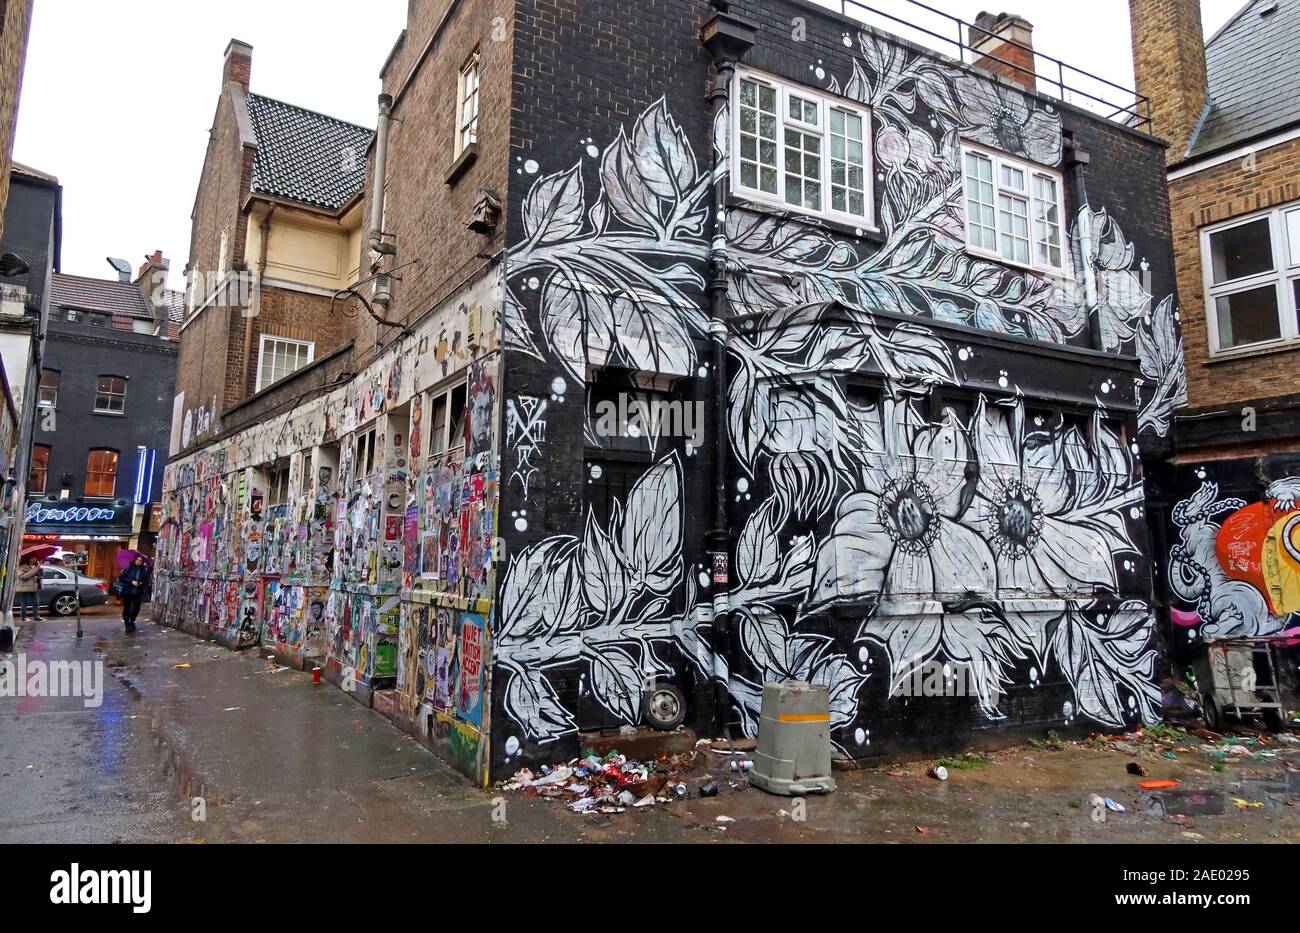 Vieux pub, 78 Brick Lane, art et graffiti, Shoreditch, Tower Hamlets, East End, Londres, South East, Angleterre, Royaume-Uni, E1 6QL Banque D'Images